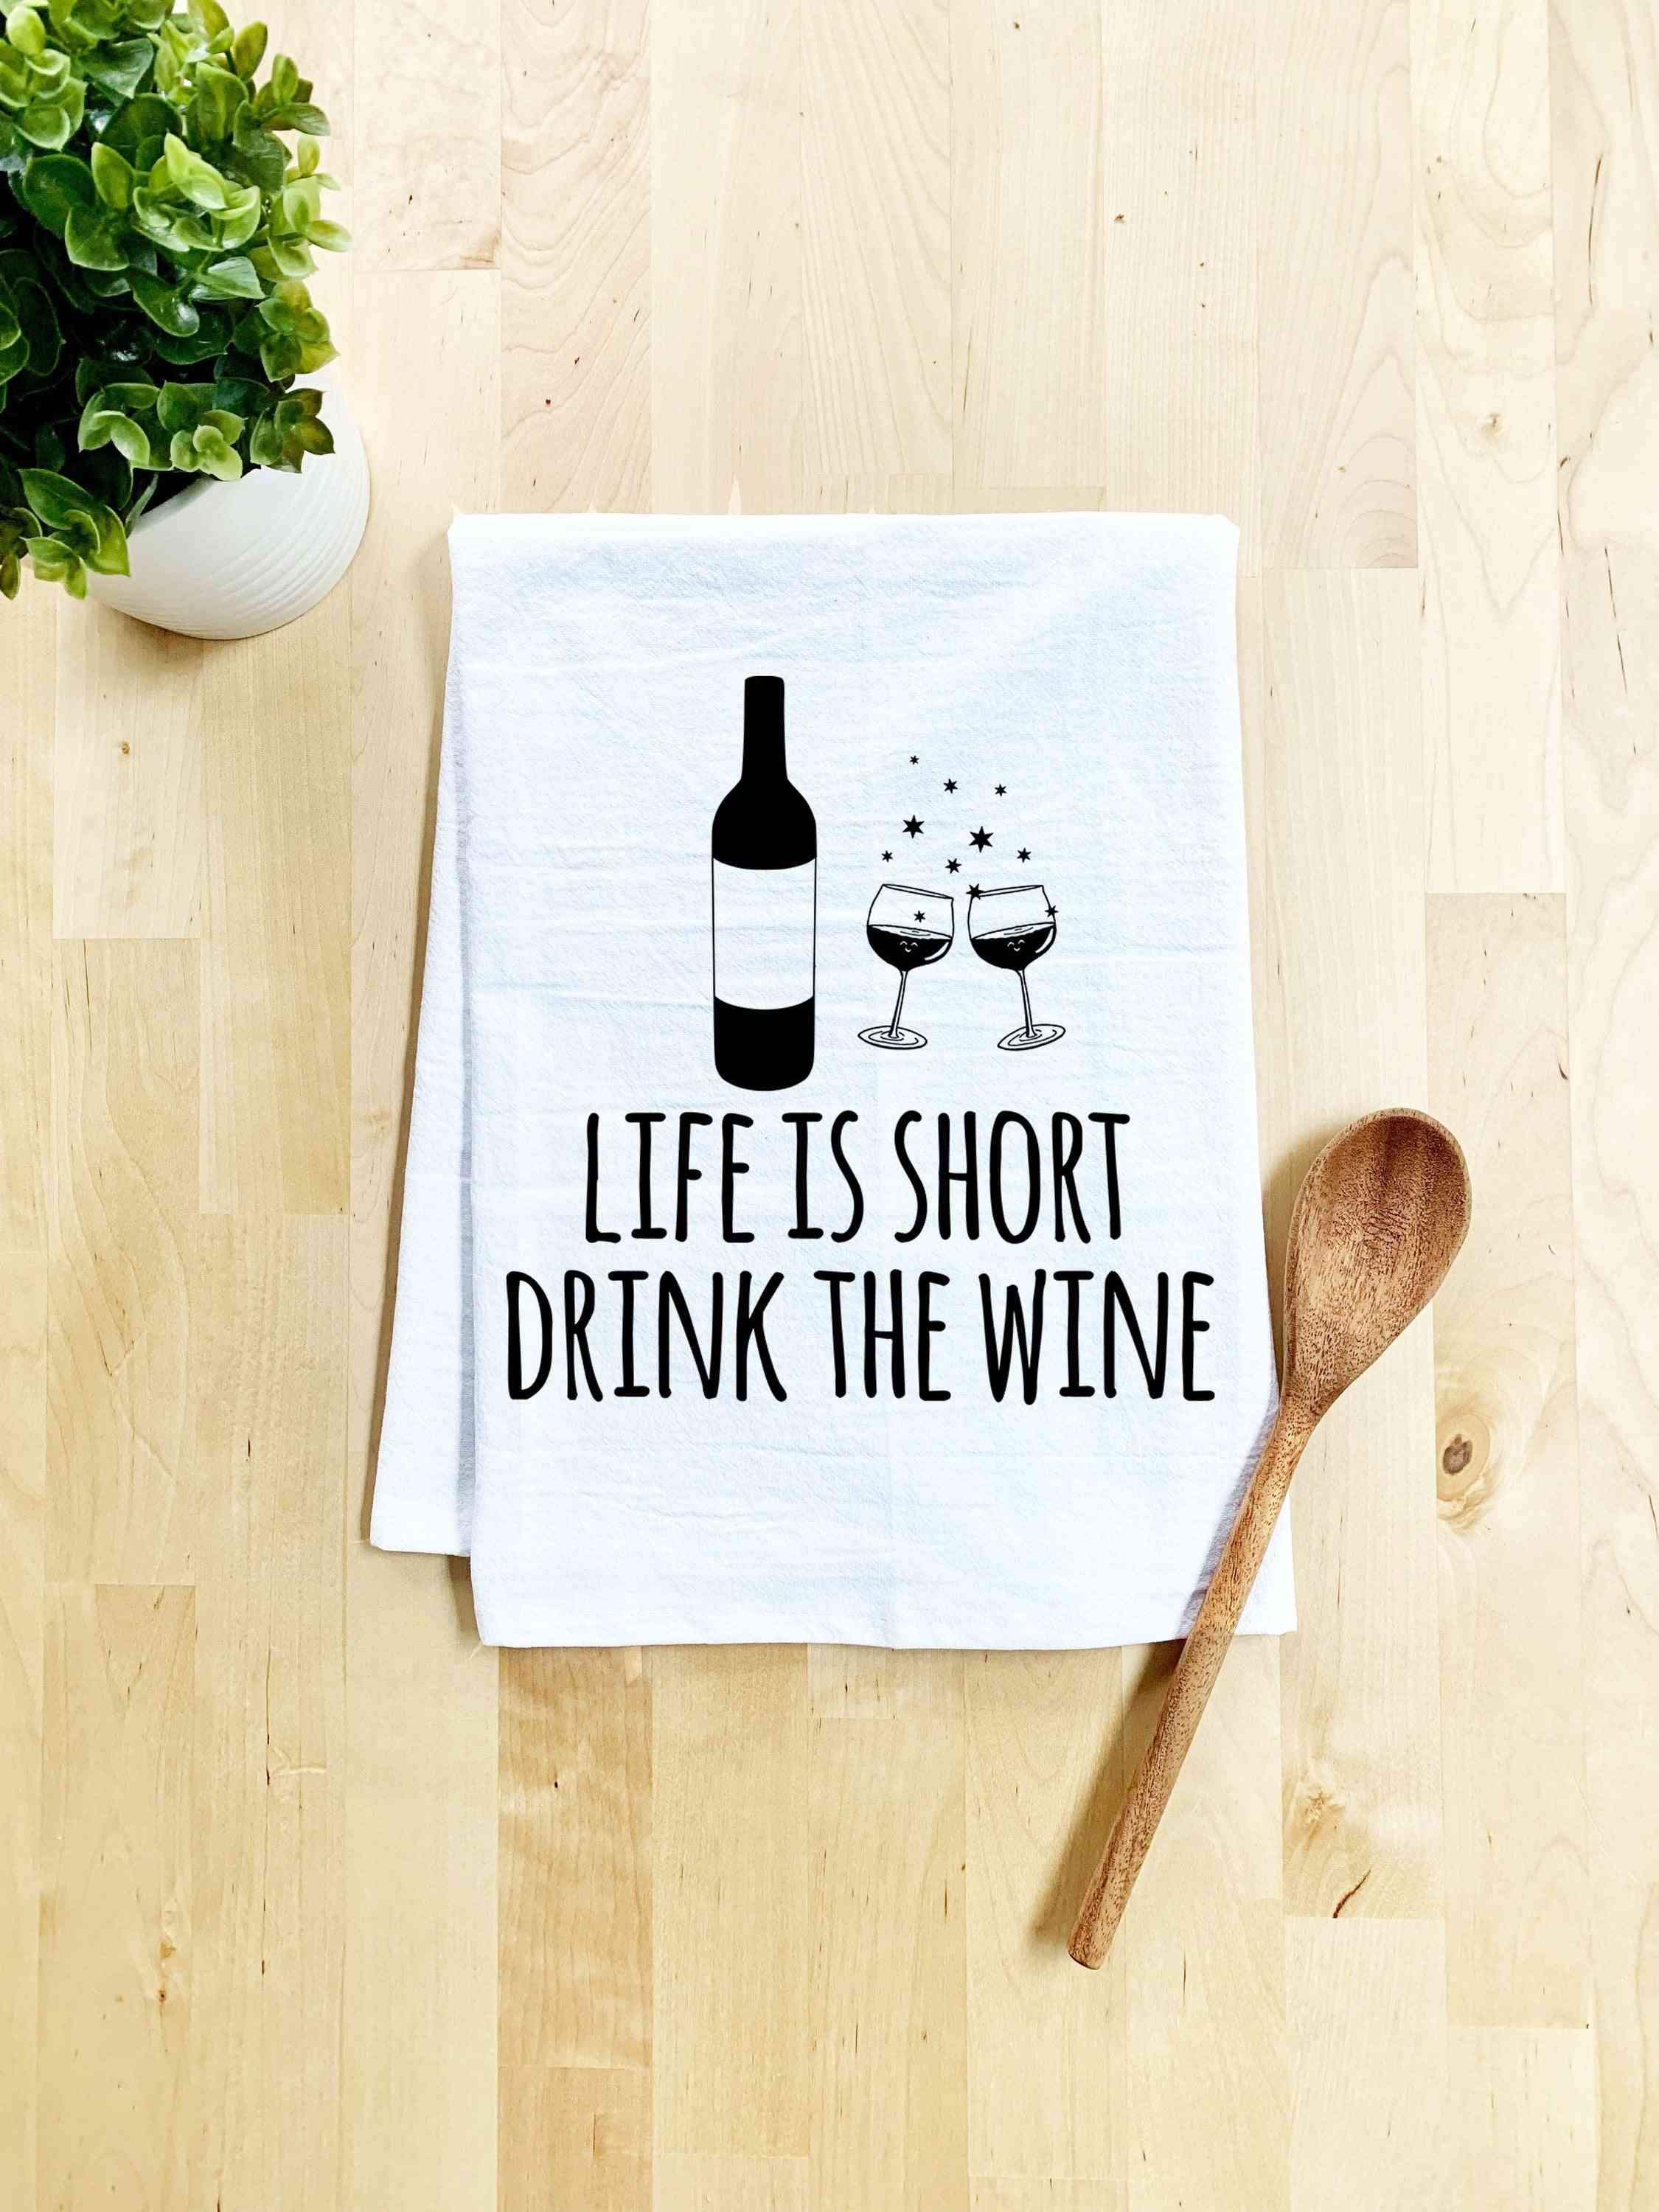 Livet är kort dricka vinhandduk